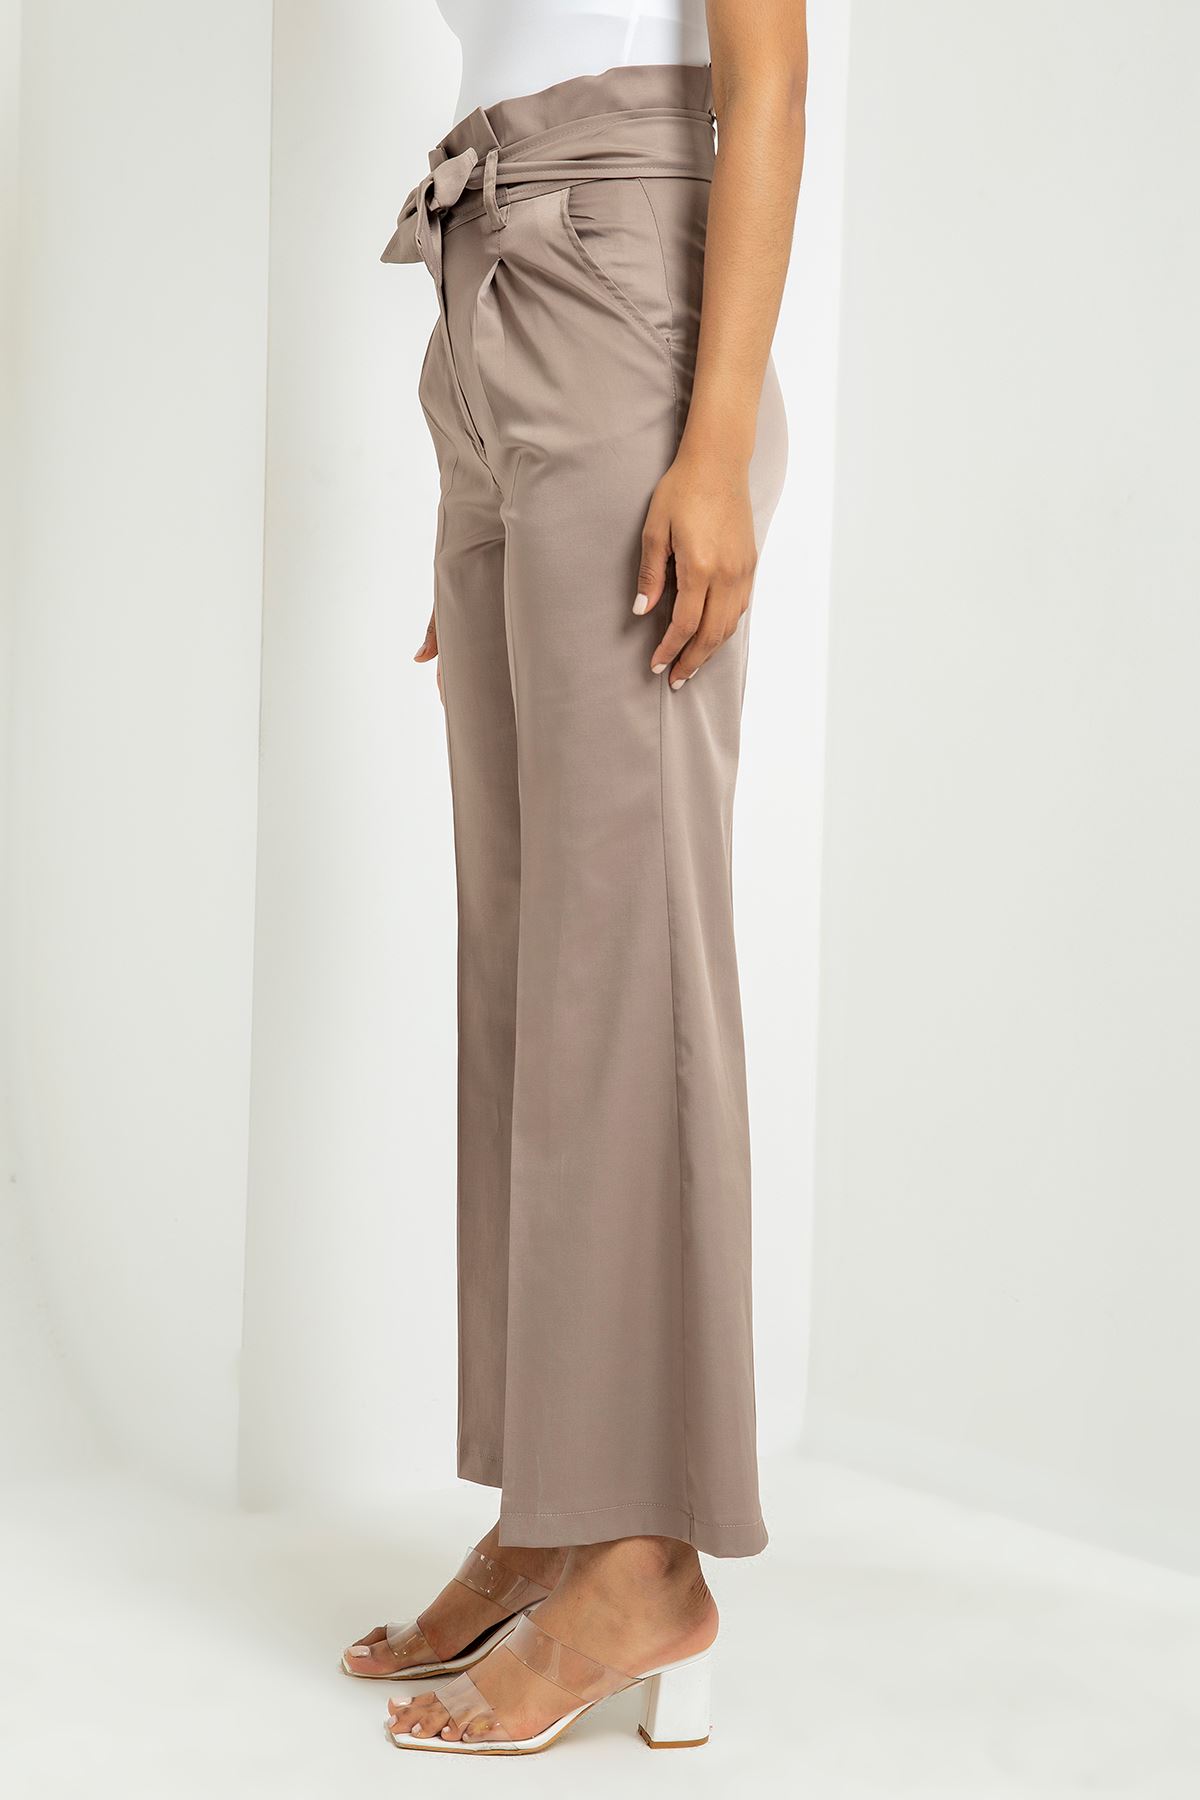 Aerobin Fabric Short Sleeve Ruffled Collar Comfy Fit Women Dress - Chanterelle 